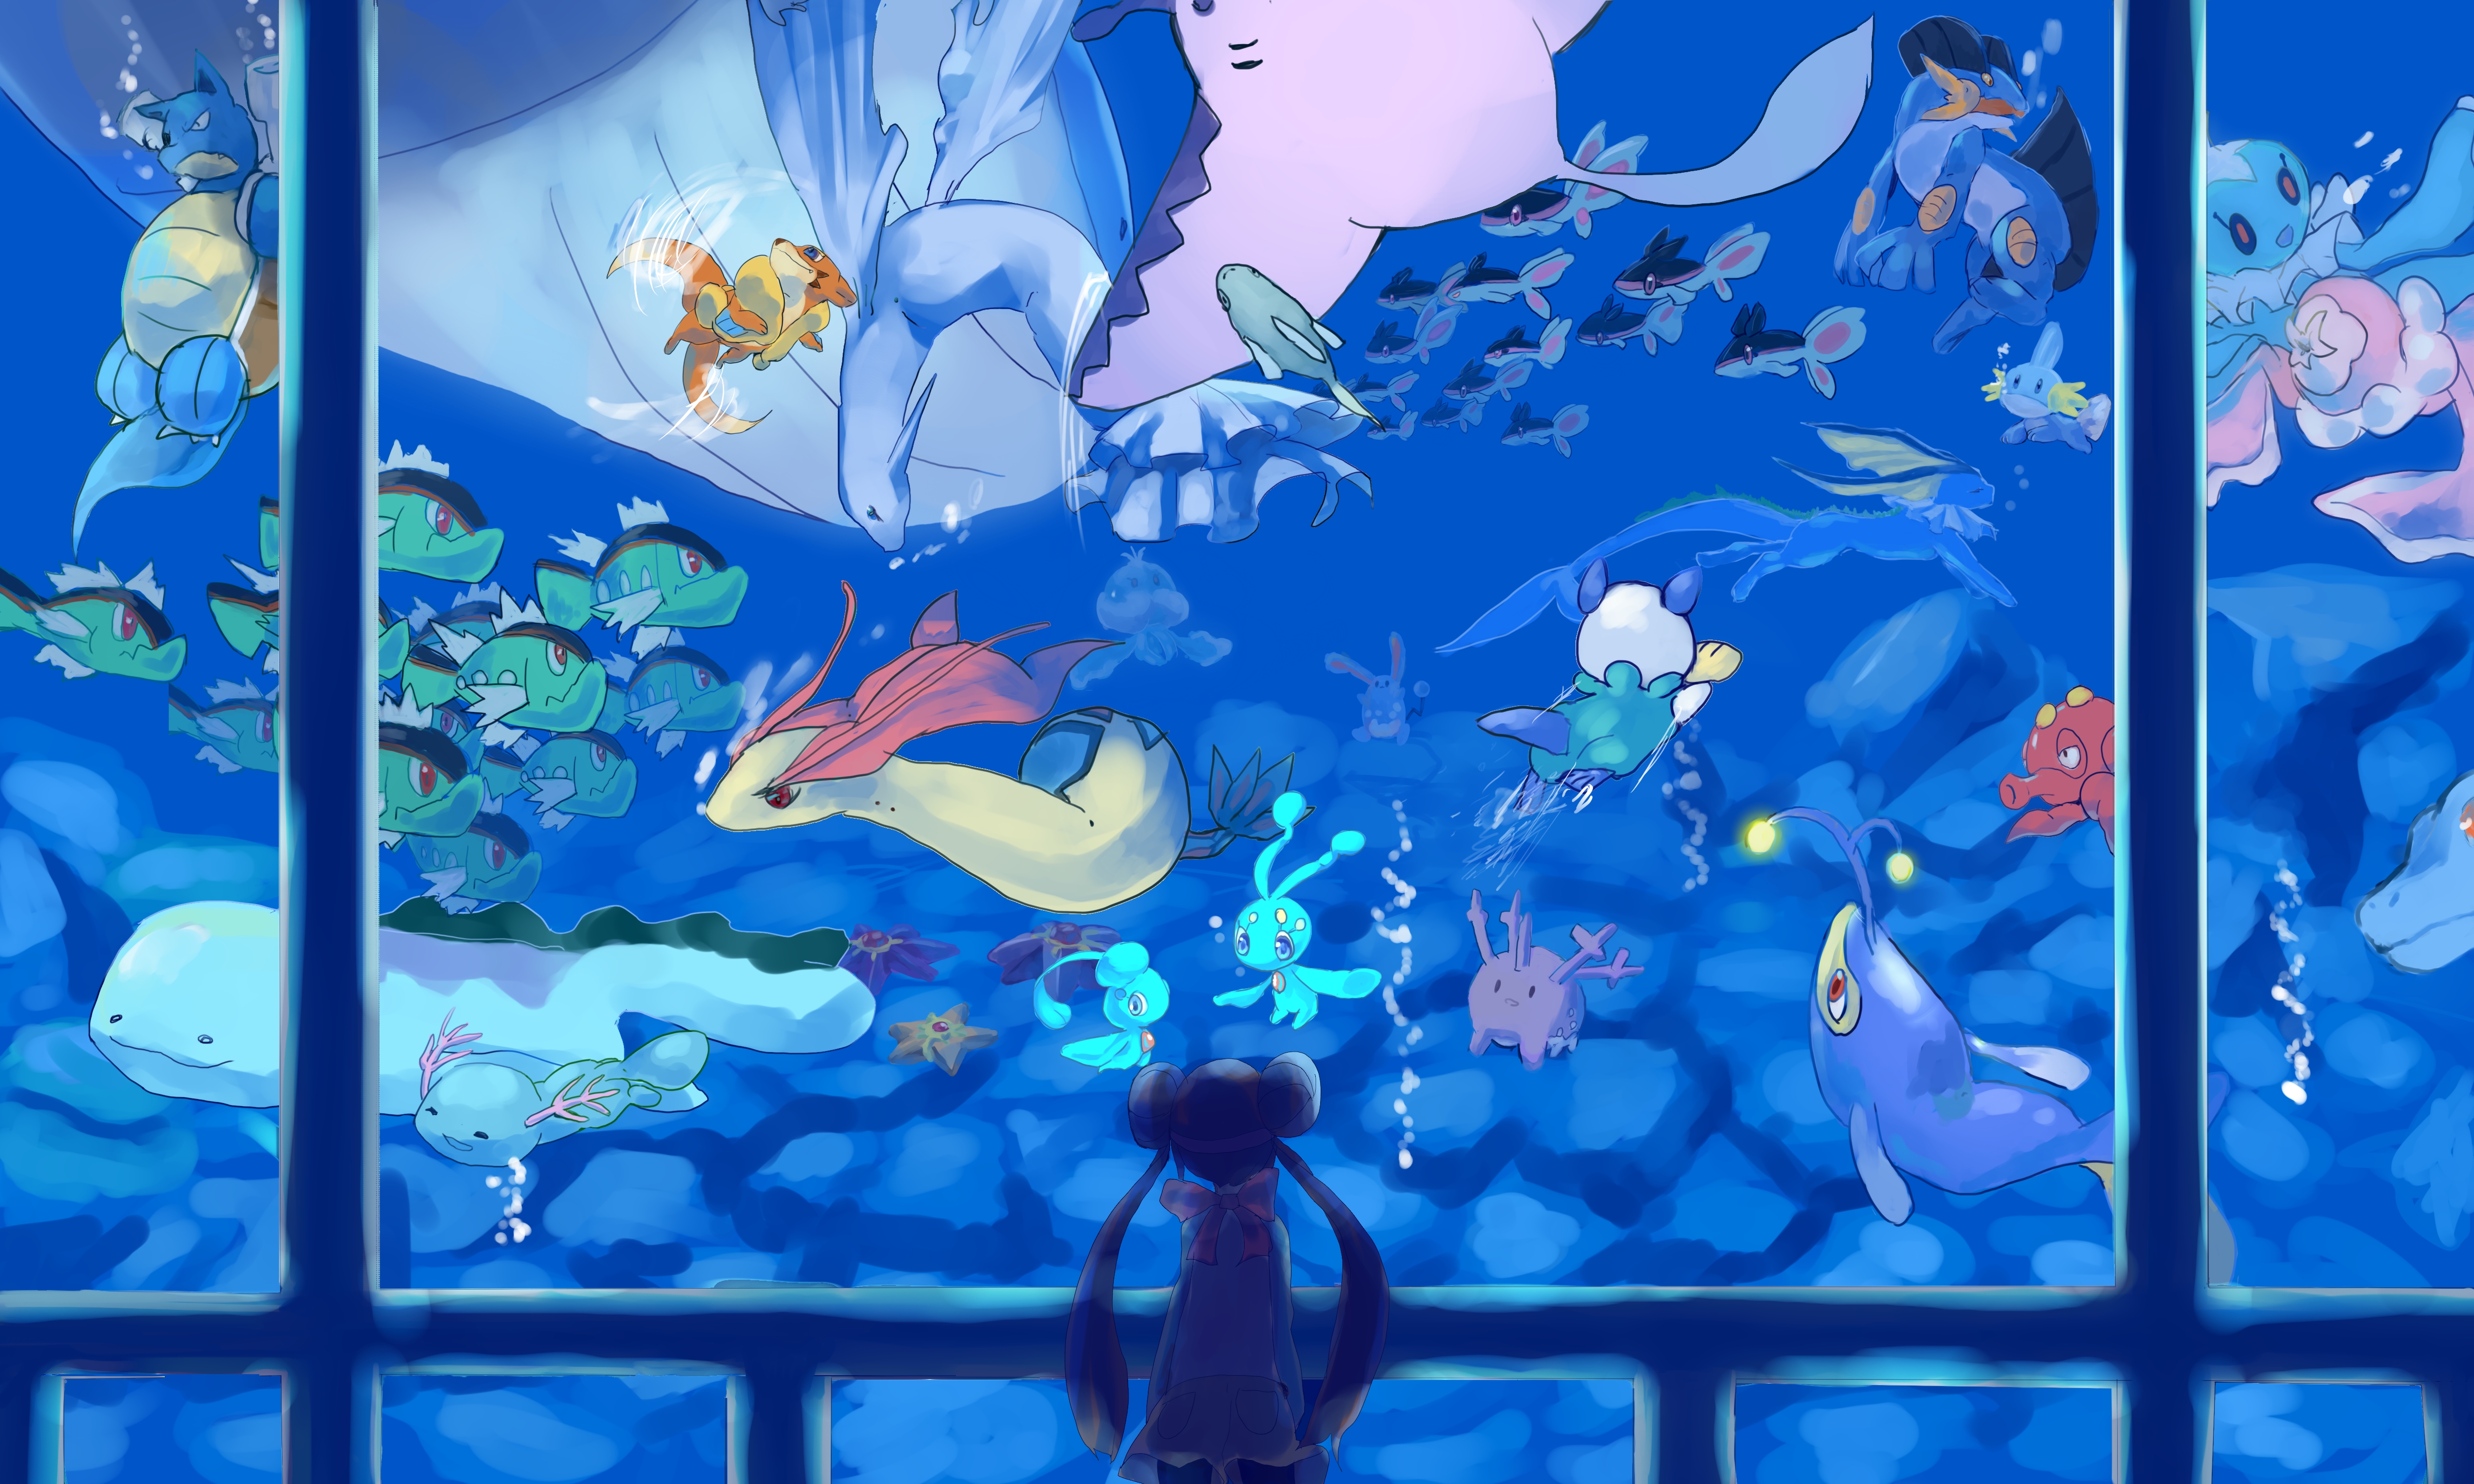 Staryu Wallpaper là bức tranh nền đầy màu sắc và sinh động. Bạn sẽ bị cuốn hút vào thế giới của chú cá nhỏ và có cảm giác như đang chơi game Pokemon. Hãy cùng xem bức tranh nền này và nhận được nhiều khoảnh khắc thú vị!